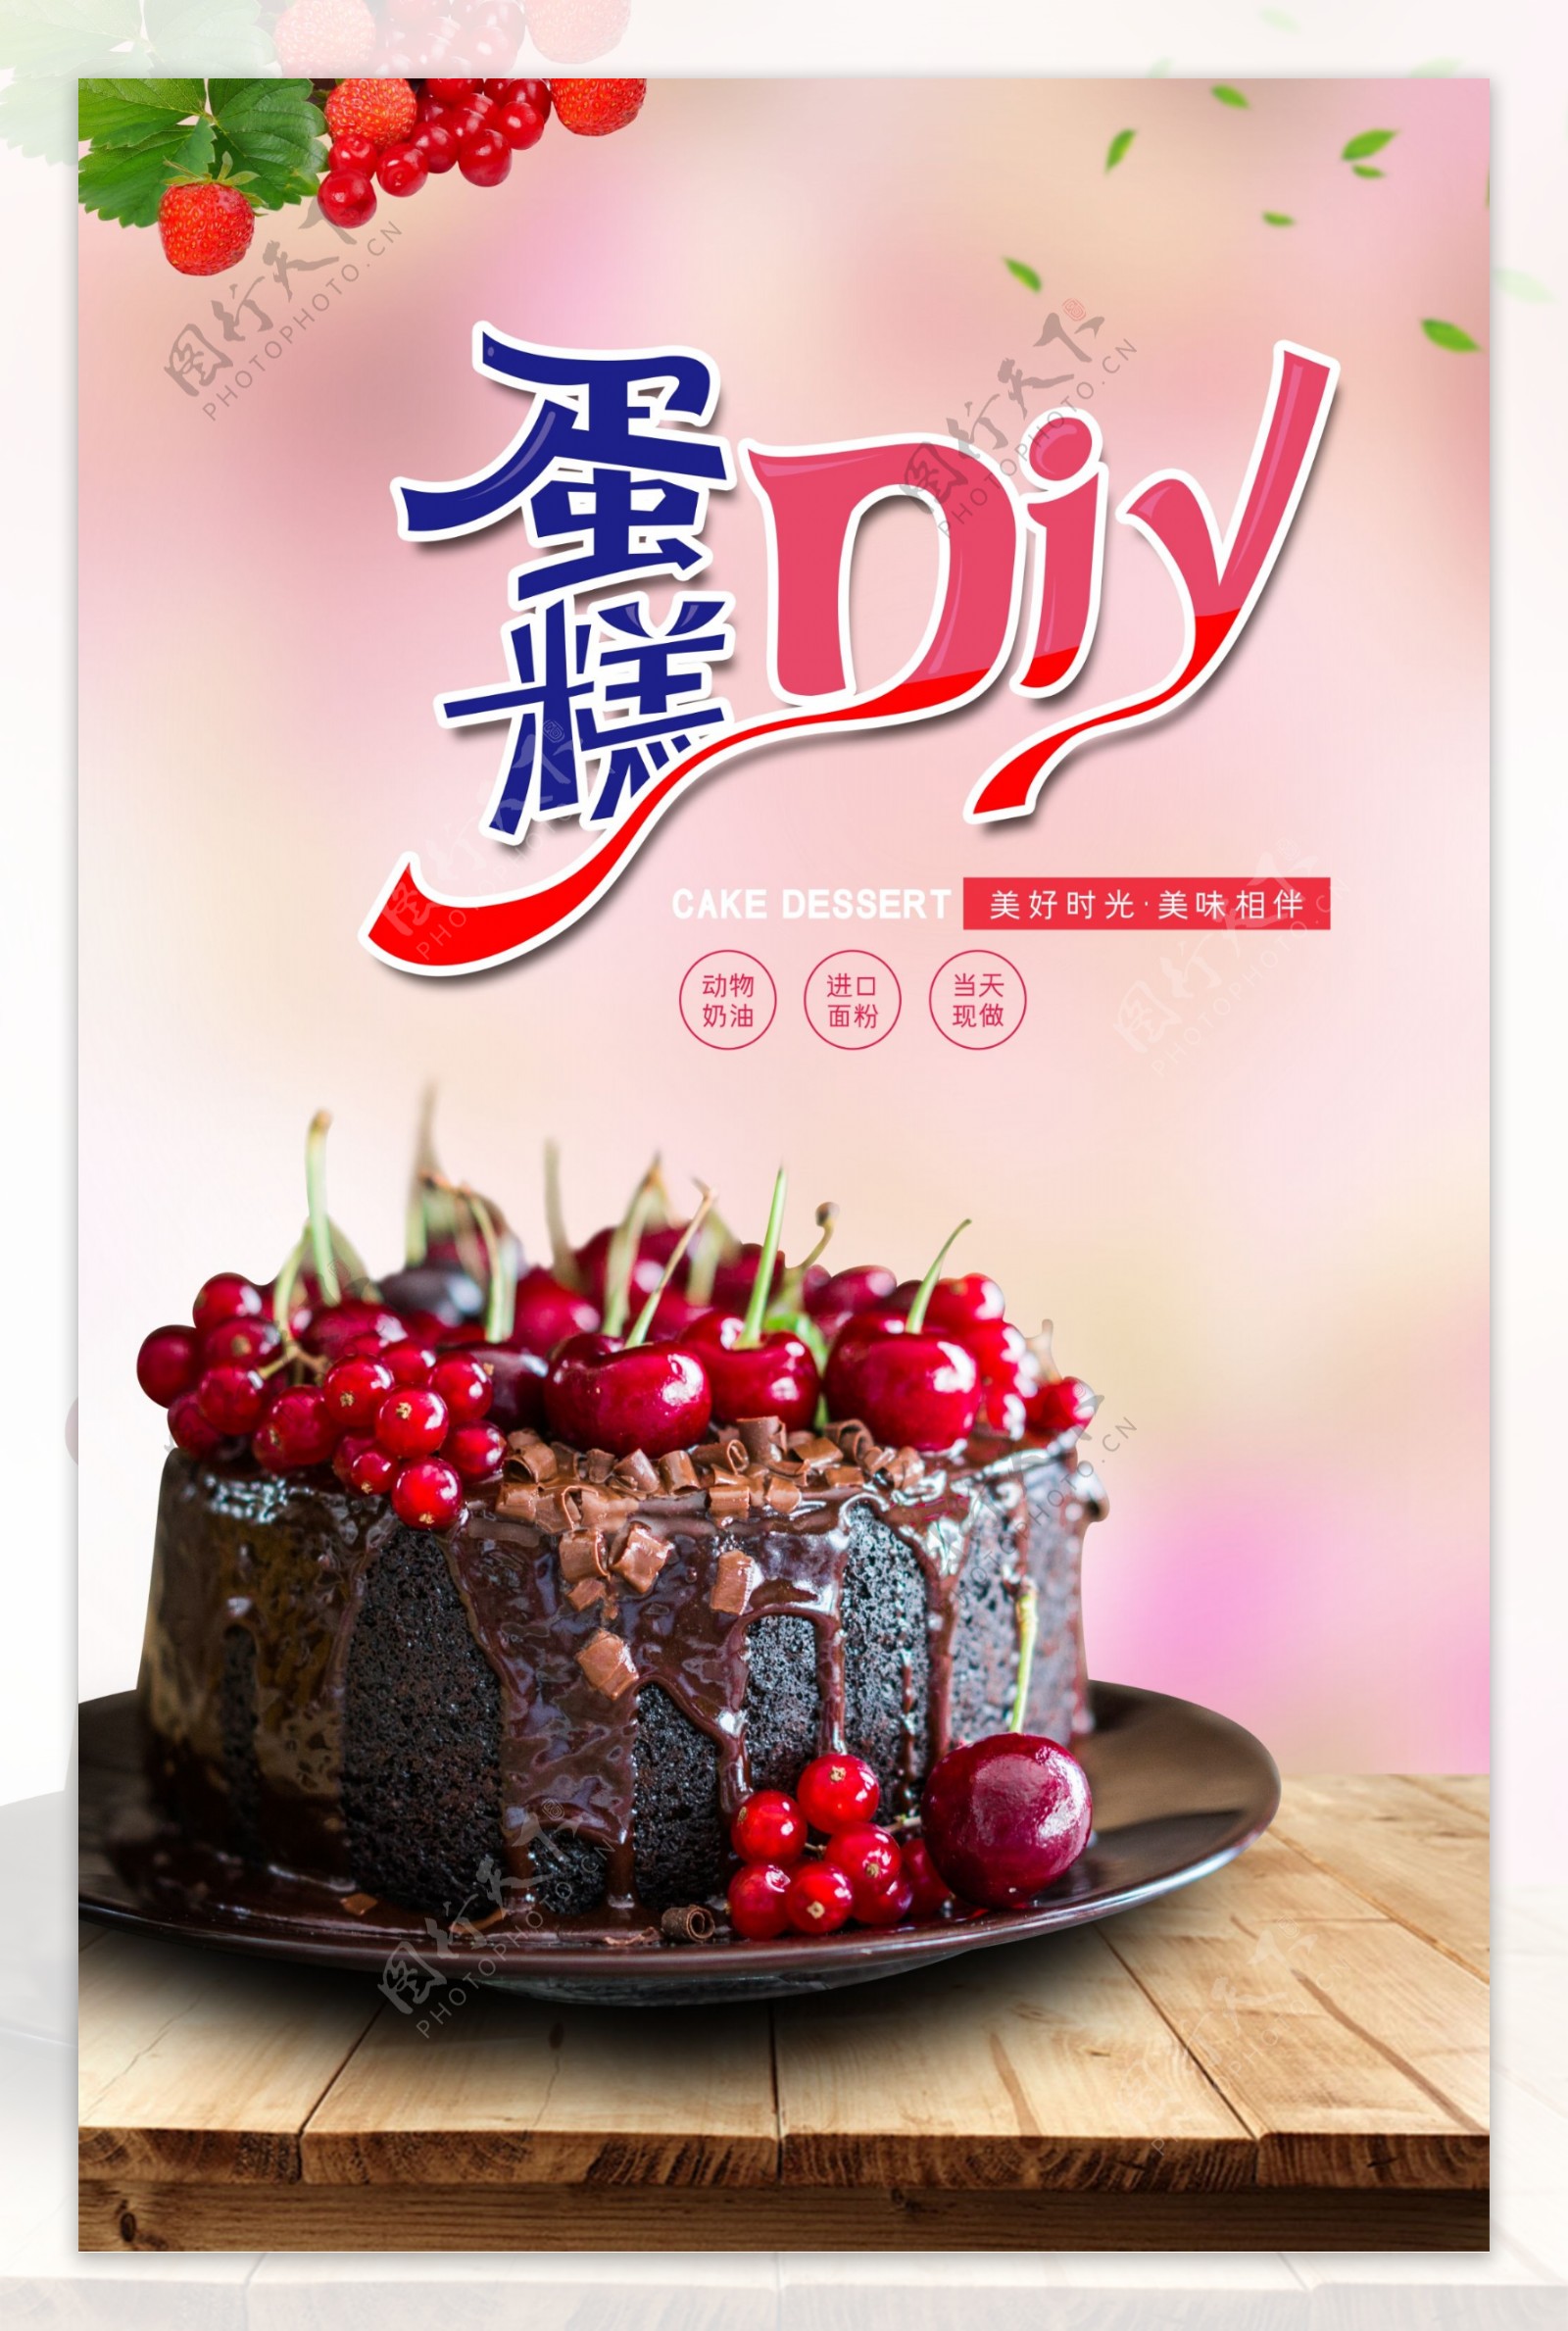 蛋糕DIYDIY蛋糕樱桃